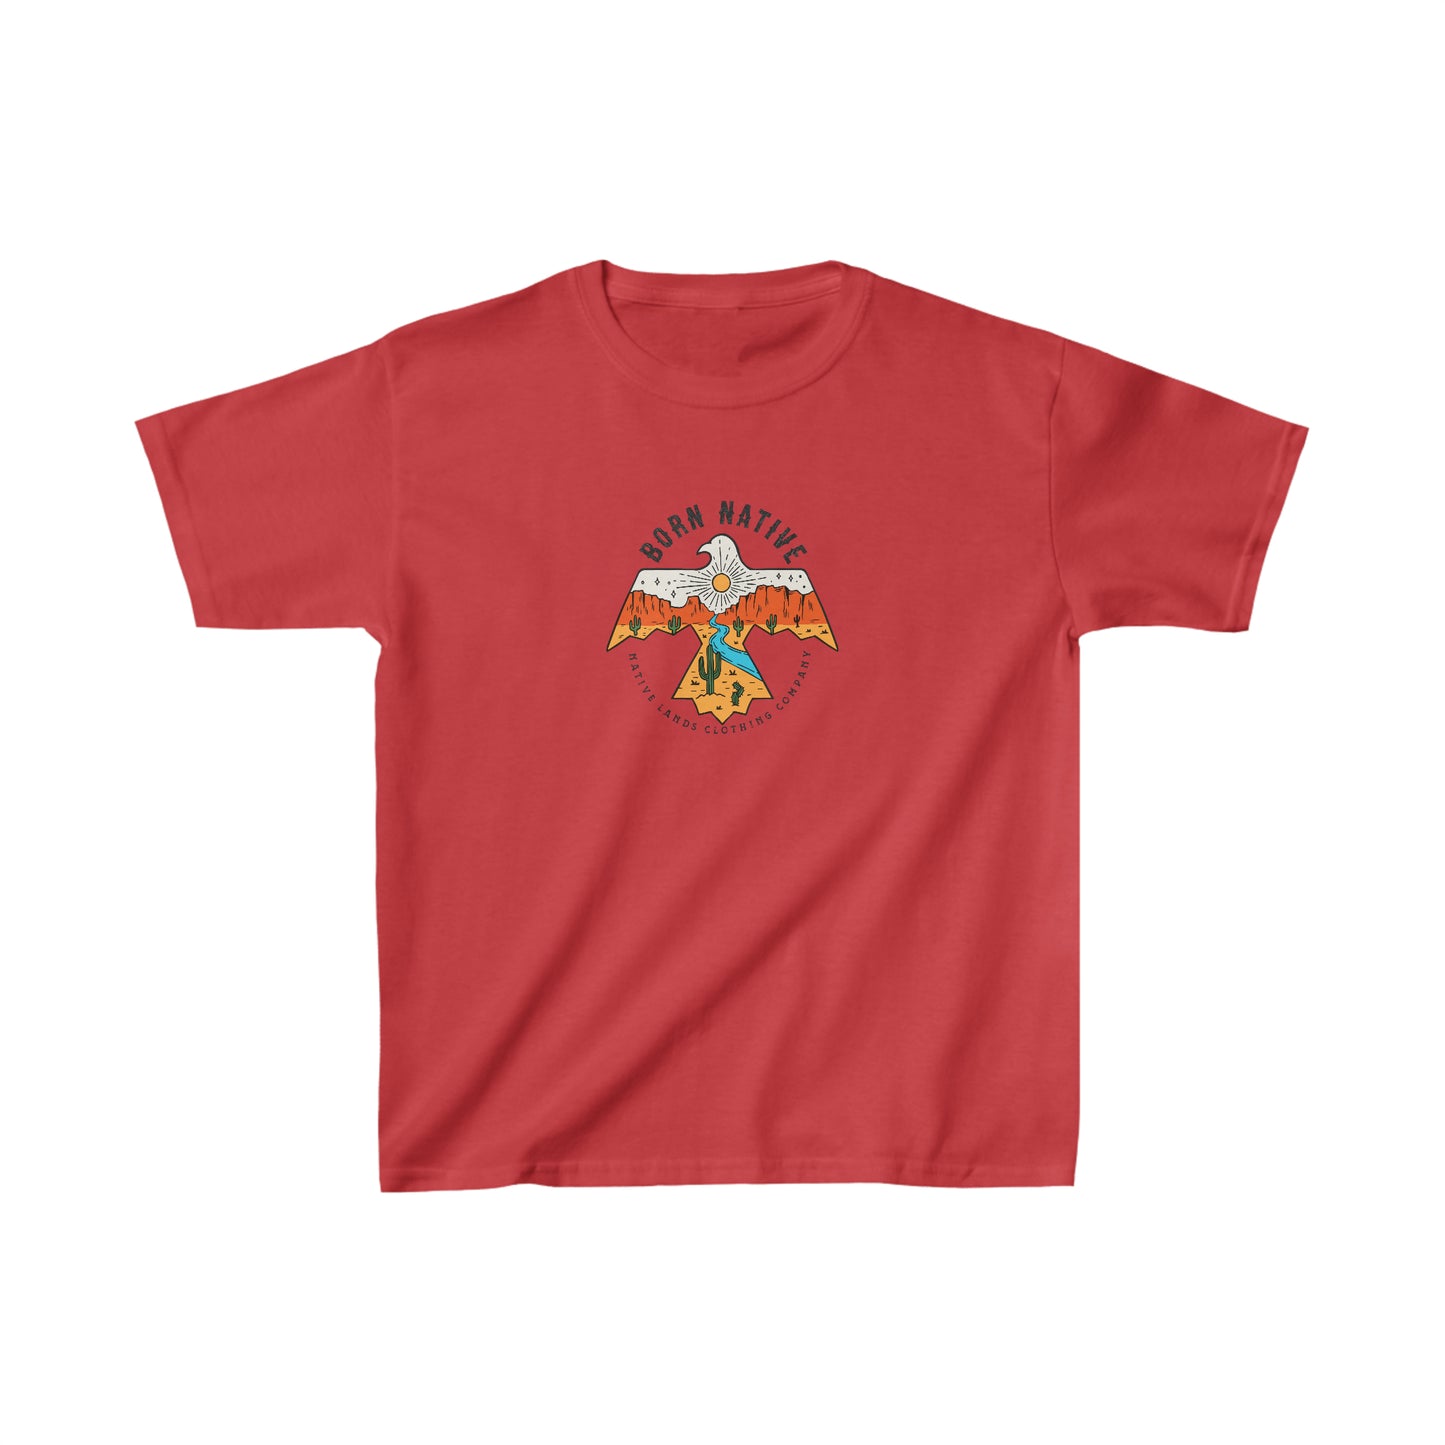 Молодежная рубашка Thunderbird из хлопка коренных американцев